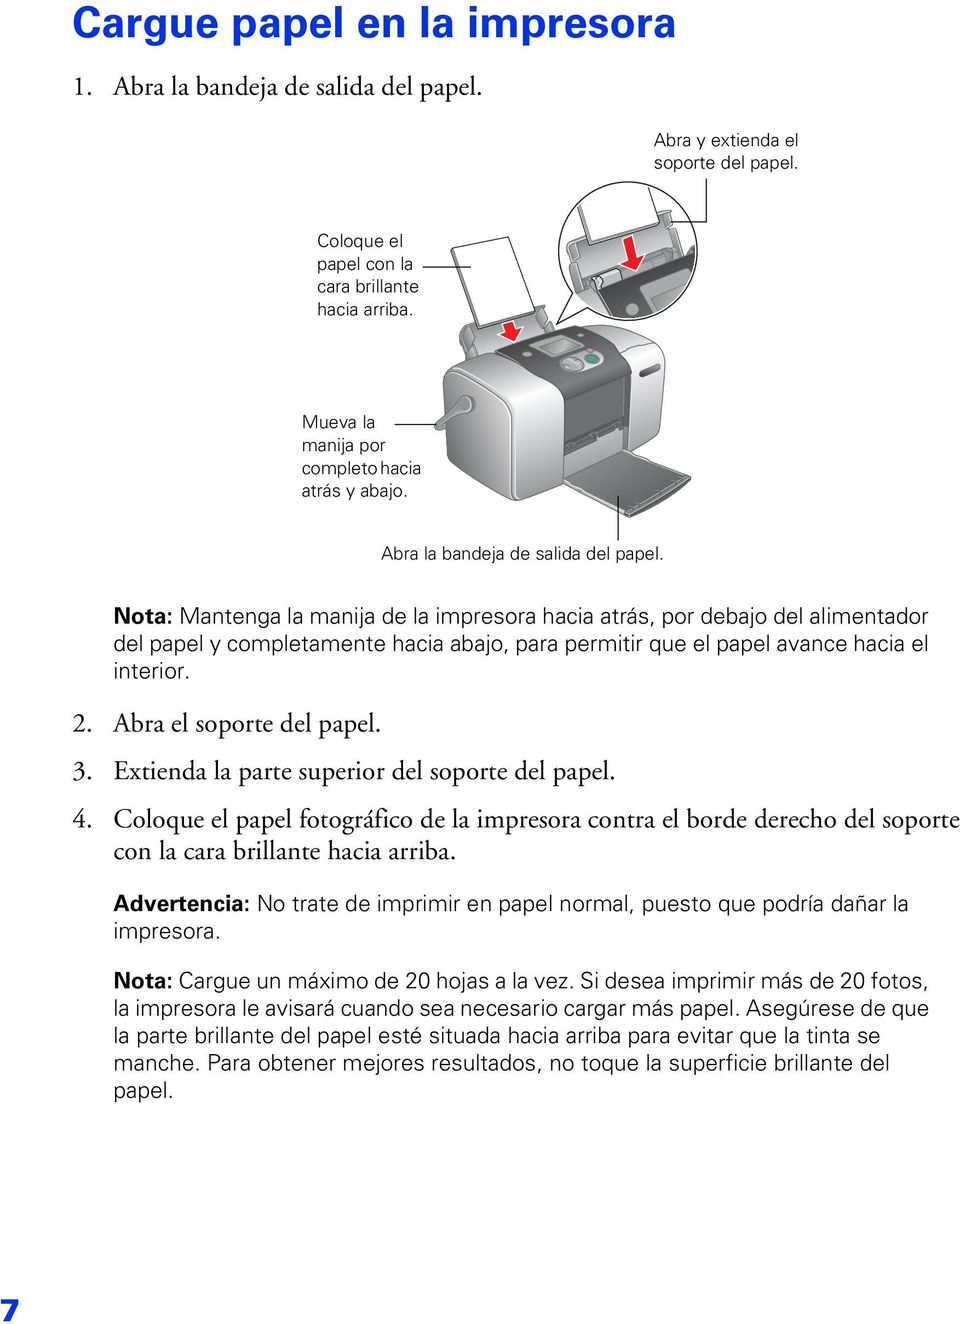 Nota: Mantenga la manija de la impresora hacia atrás, por debajo del alimentador del papel y completamente hacia abajo, para permitir que el papel avance hacia el interior. 2.